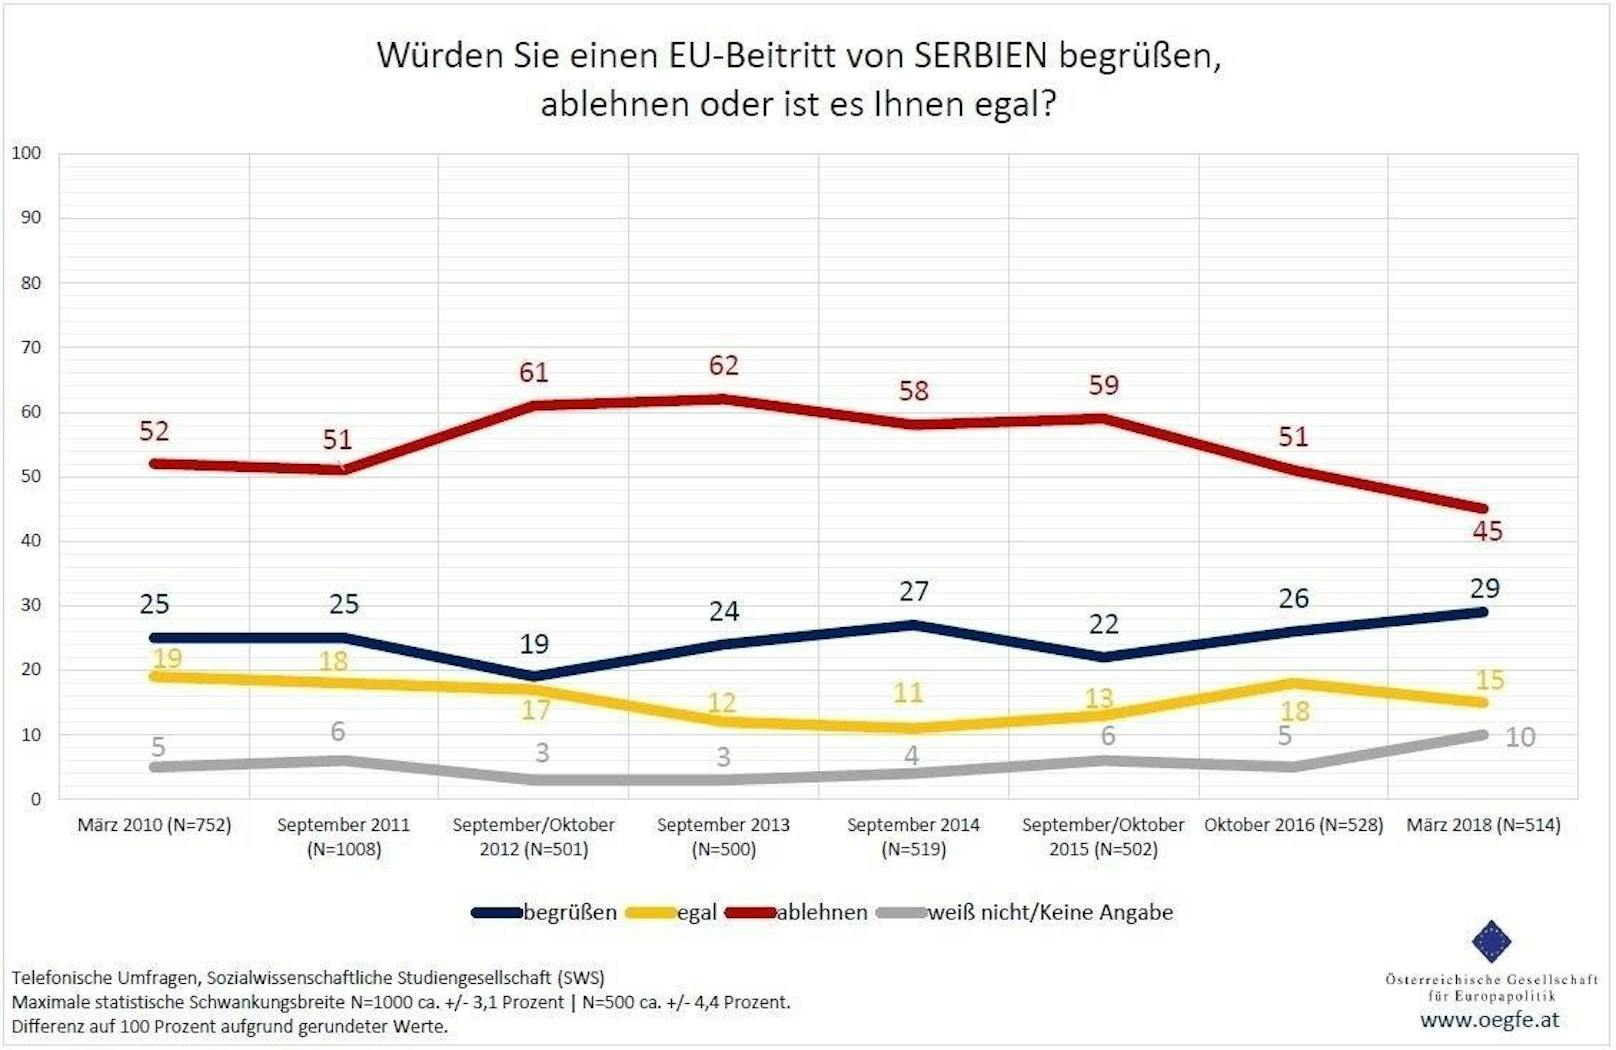 Im Fall von <b>Serbien</b> sind es 29 Prozent, die eine EU-Mitgliedschaft des Landes begrüßen würden, während 45 Prozent eine solche ablehnen und 15 Prozent sich indifferent zeigen.